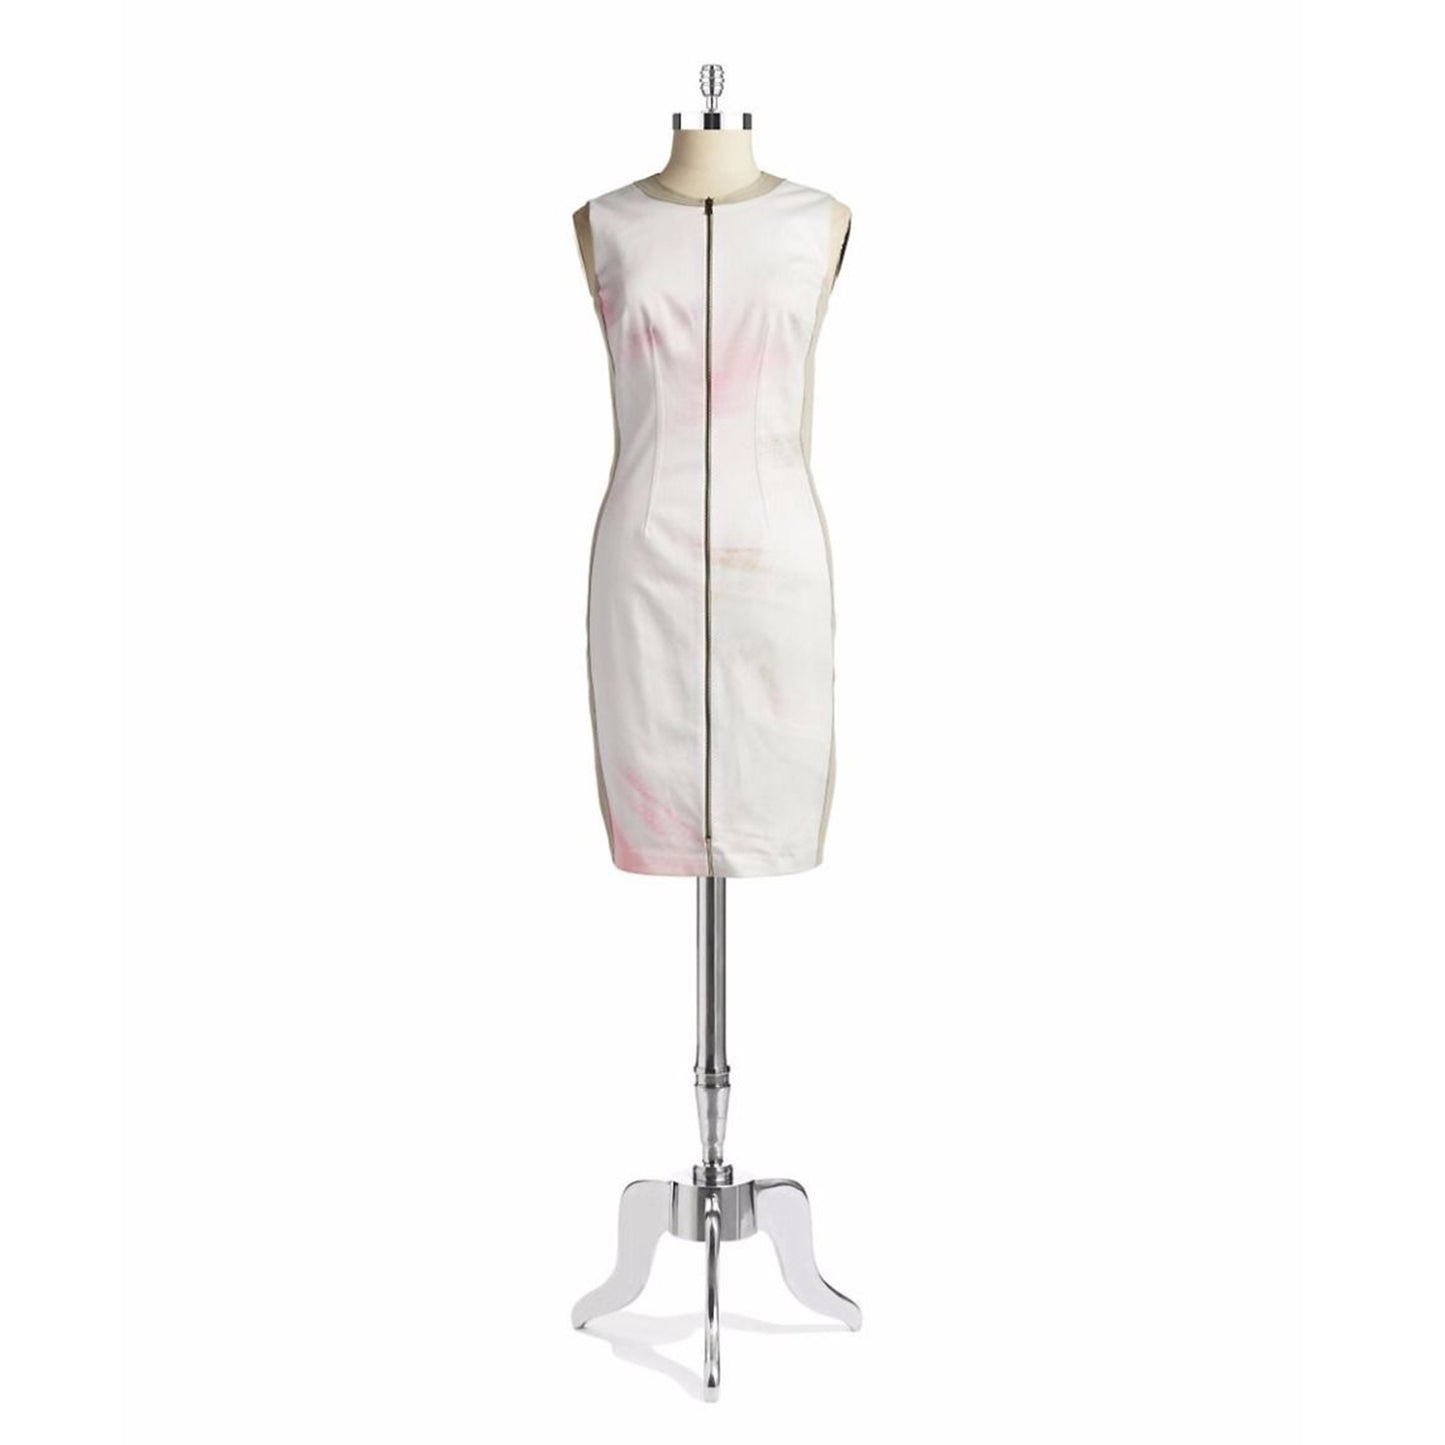 T TAHARI Women's Avani White Printed Sleeveless Front Zip Stretch Dress Sheath